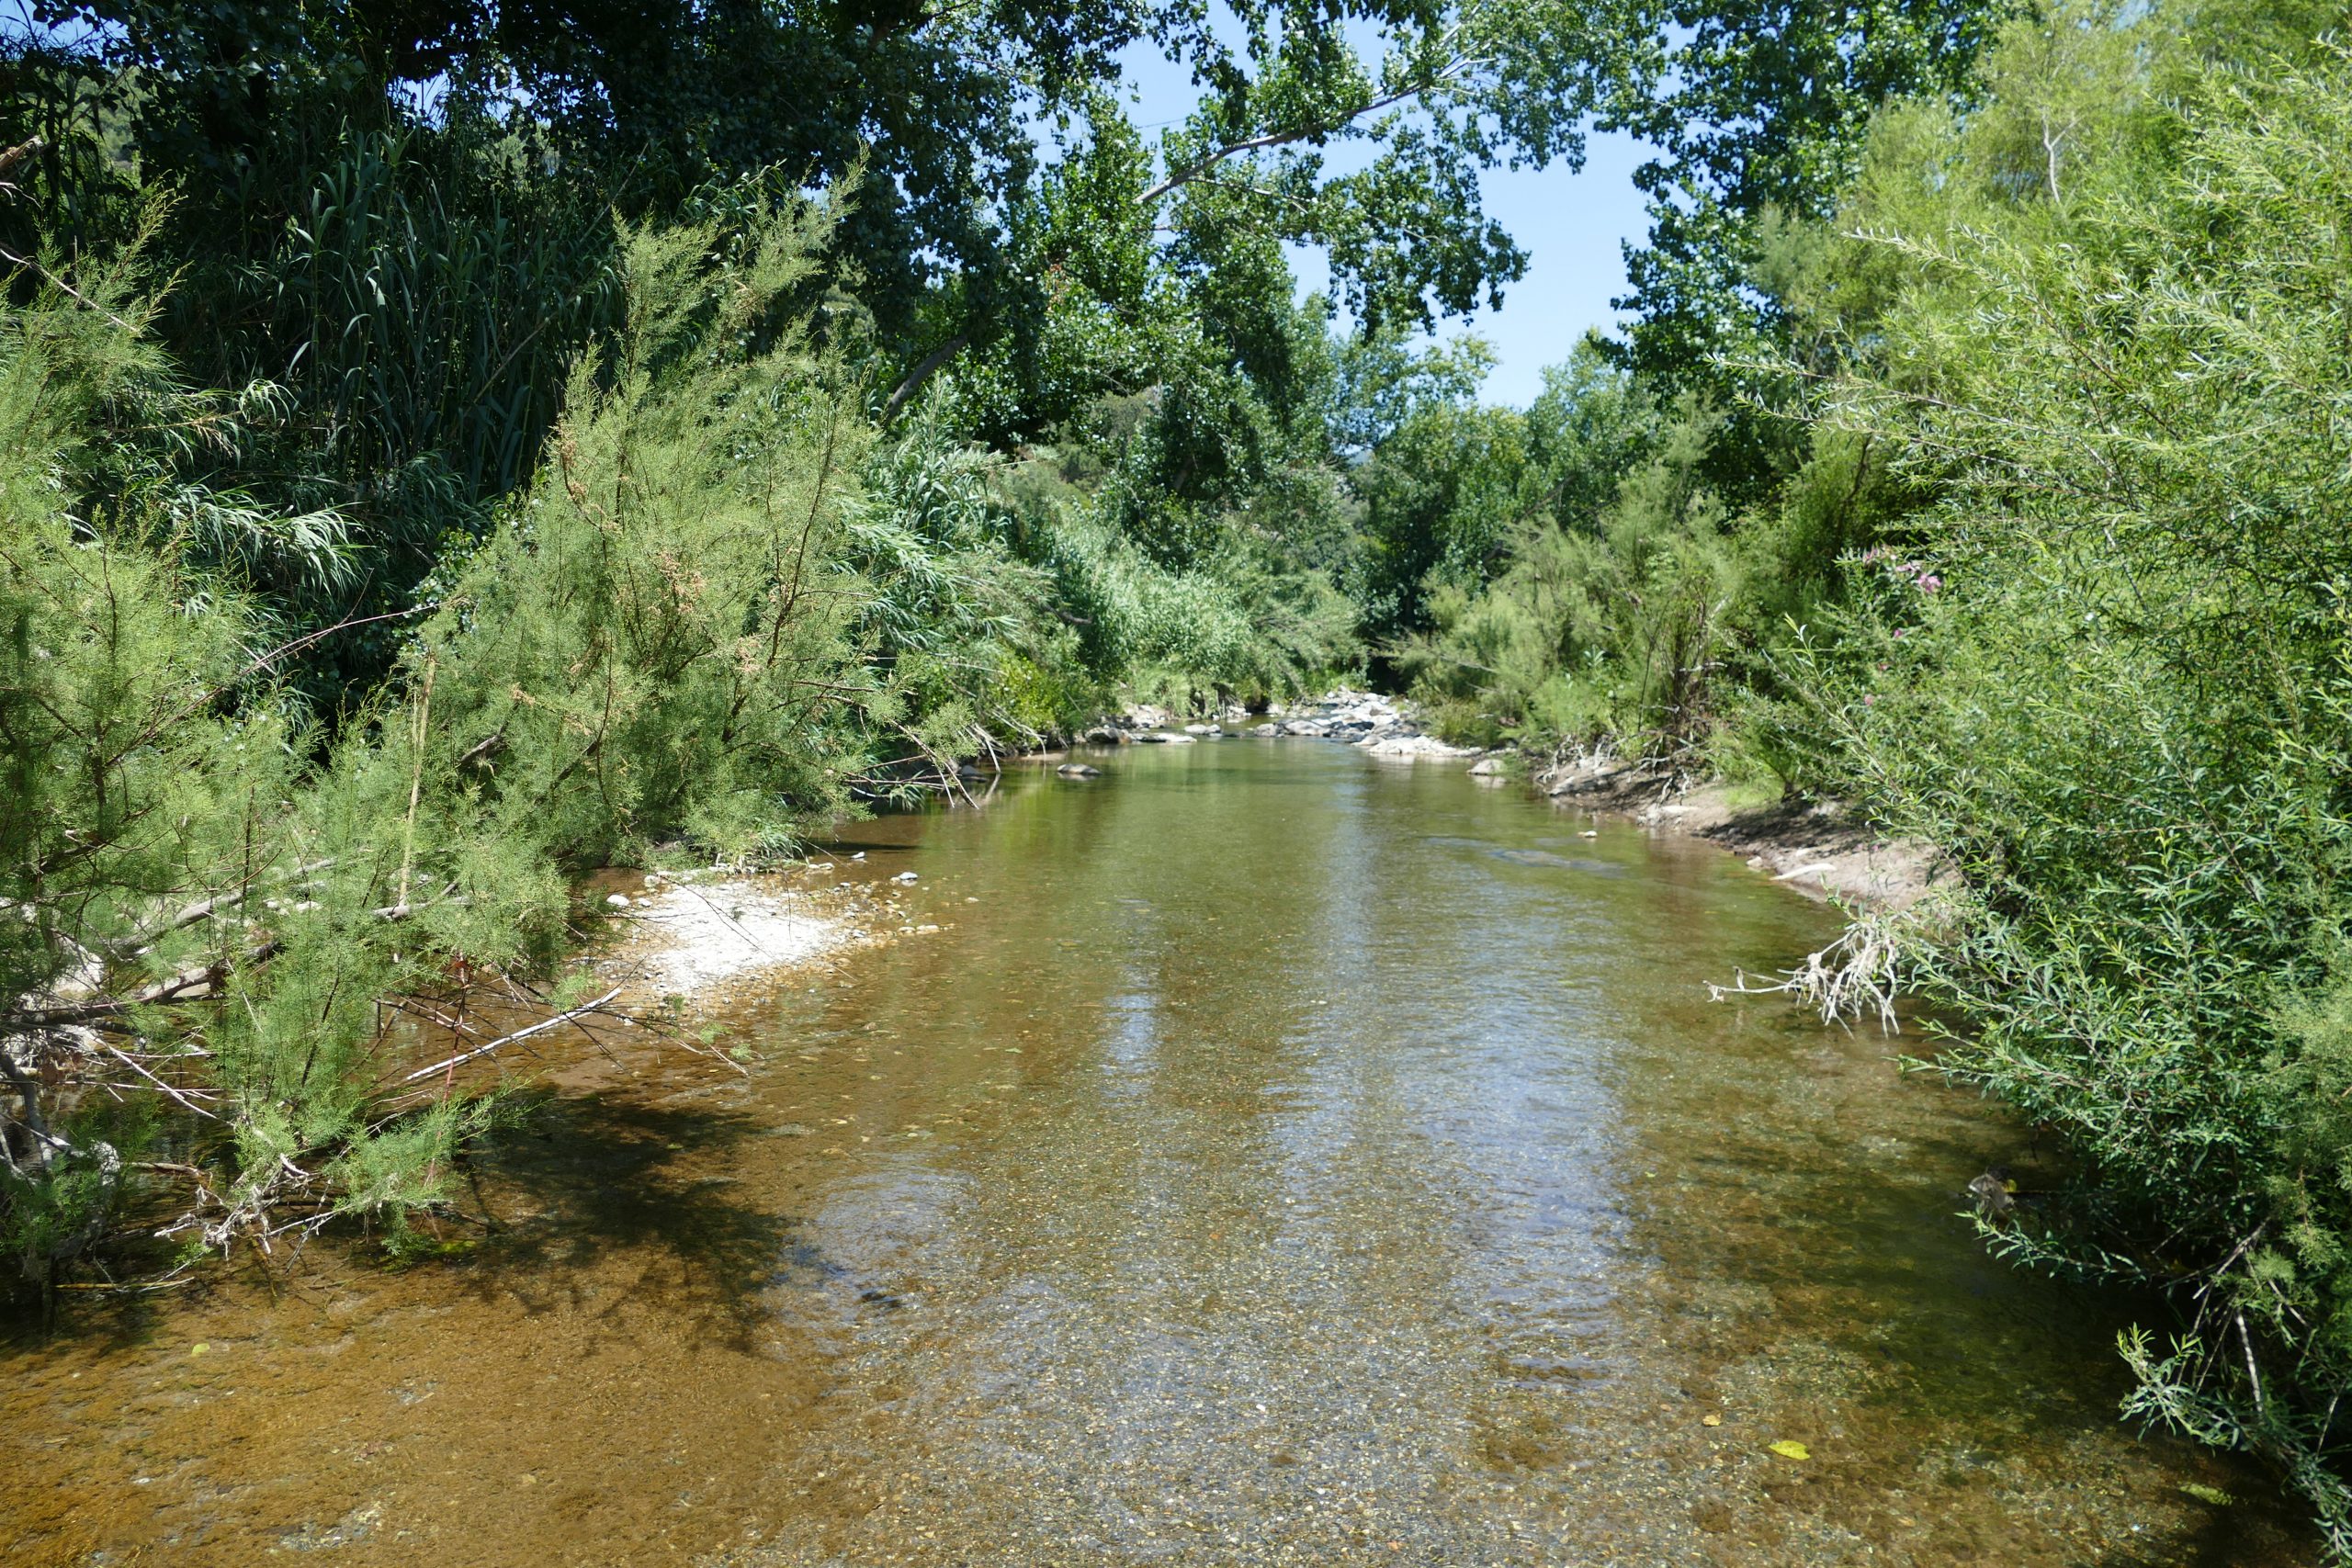 The Genal river - Río Genal